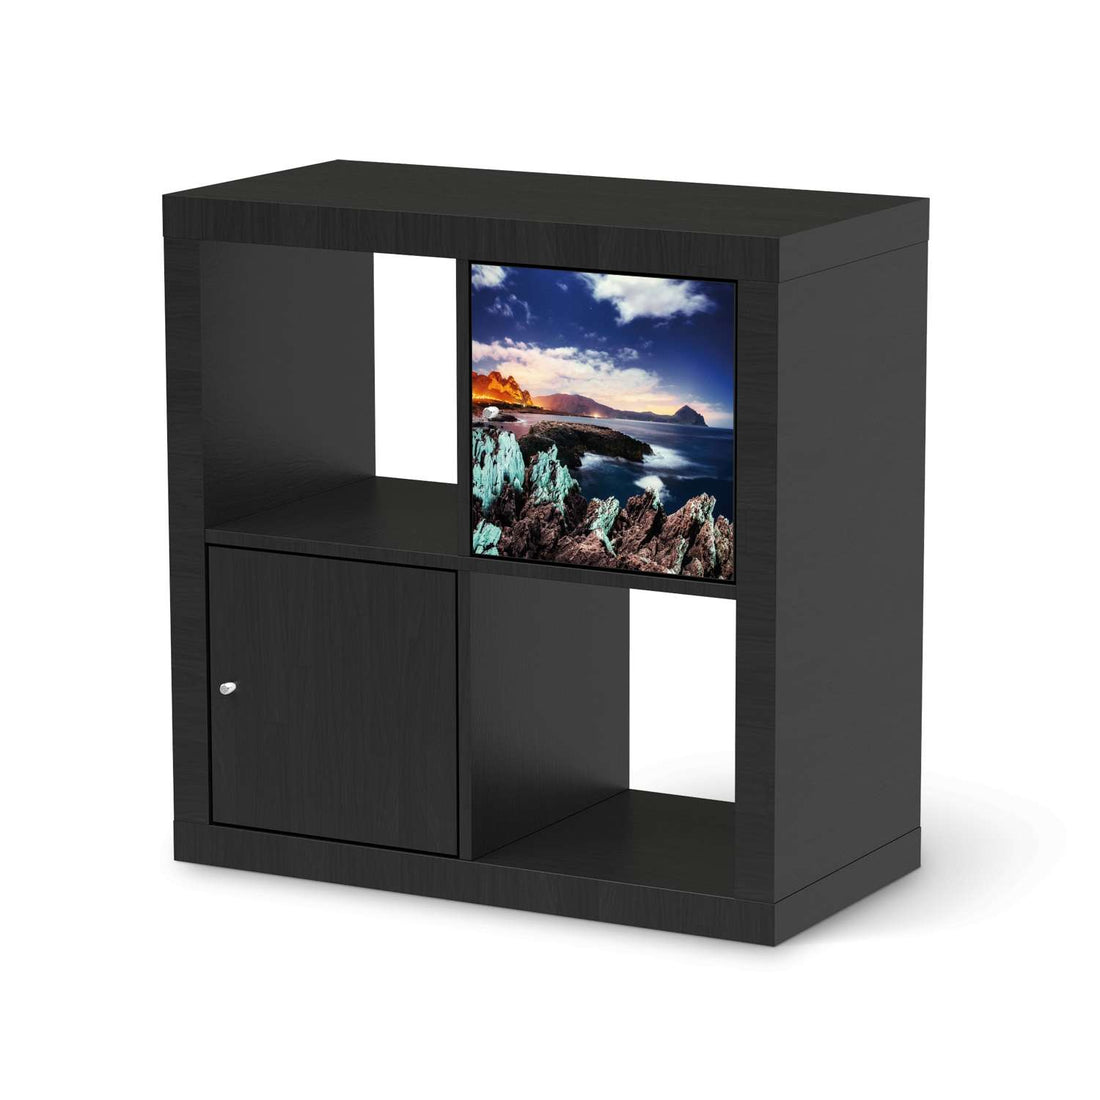 Selbstklebende Folie Seaside - IKEA Kallax Regal 1 Türe - schwarz